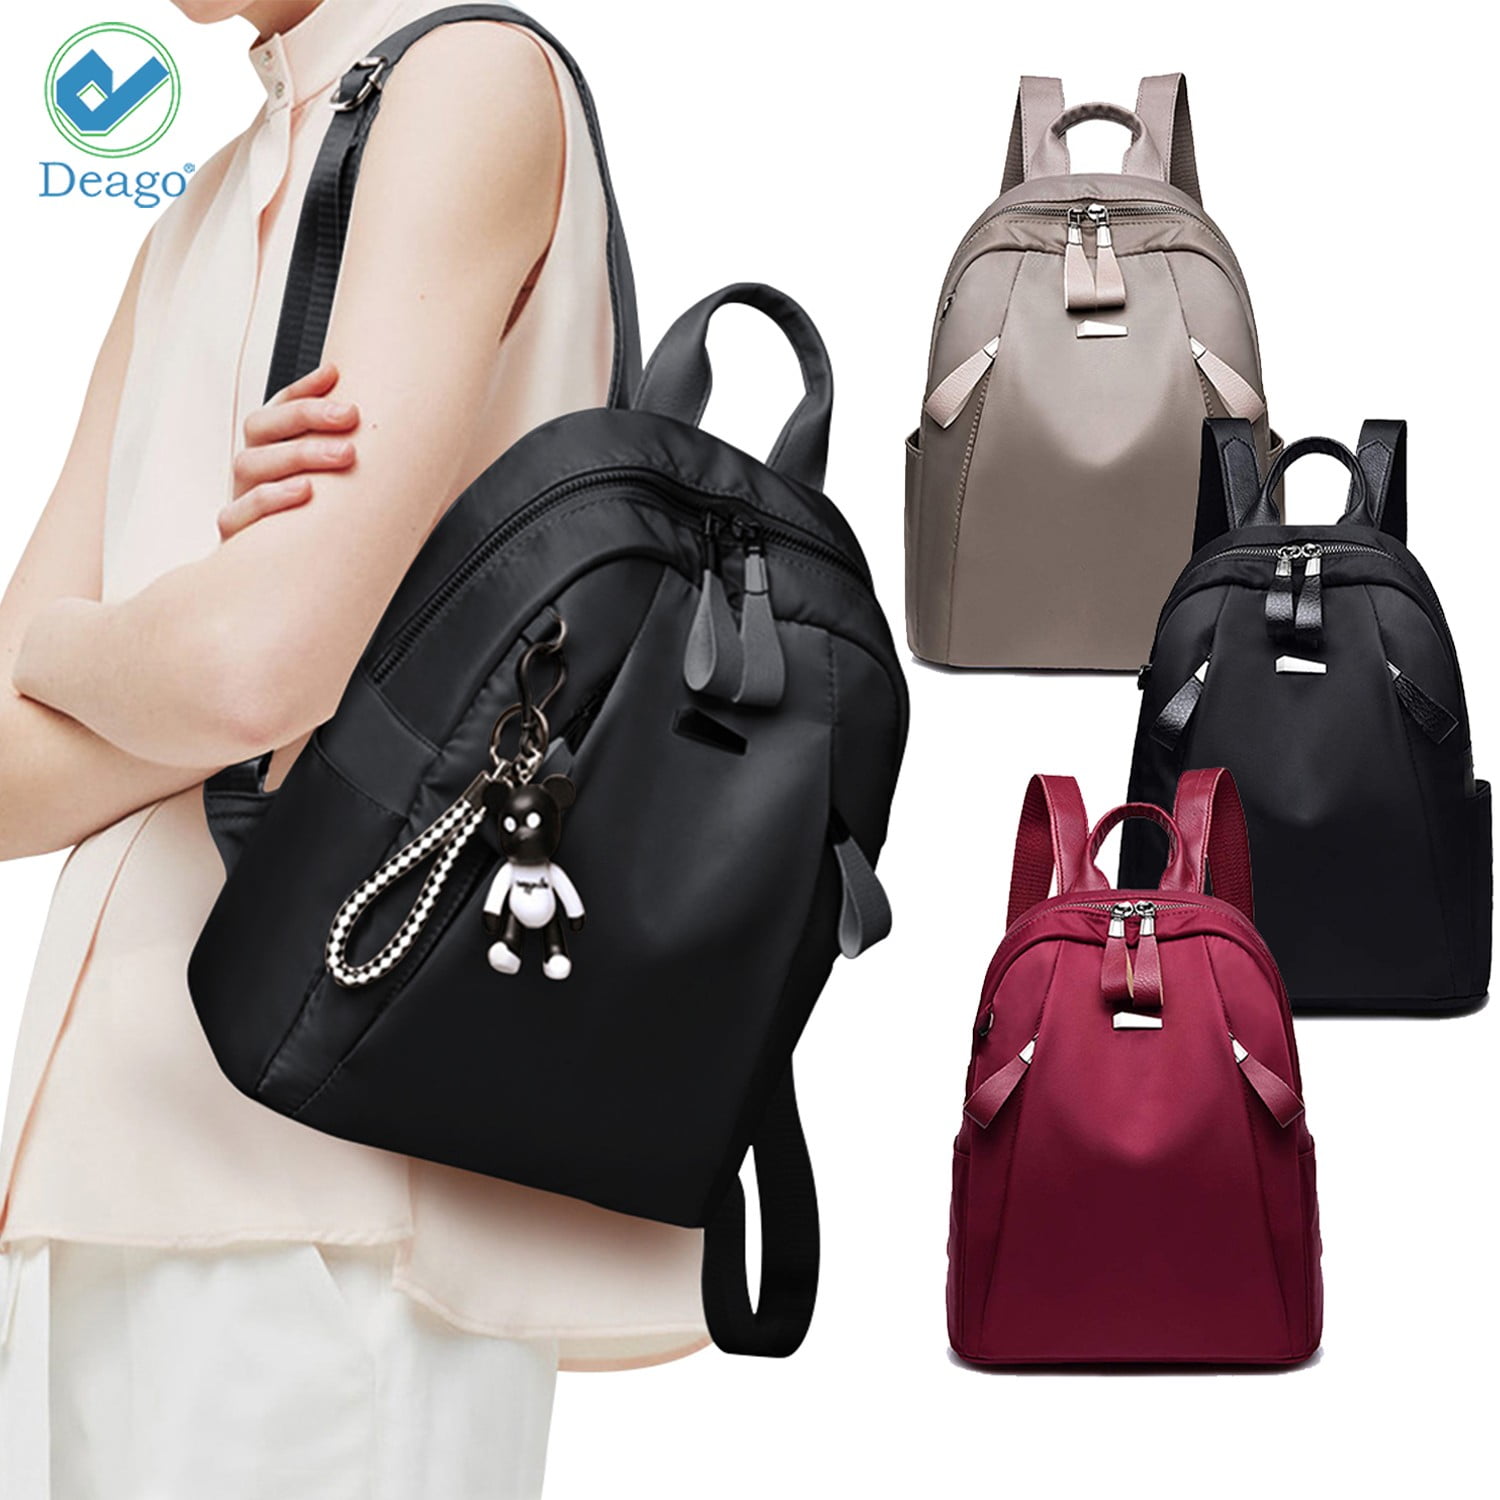 3D school bag Backpack with lemon pattern large capacity school bag linen for on the go ideal for women men girls boys 